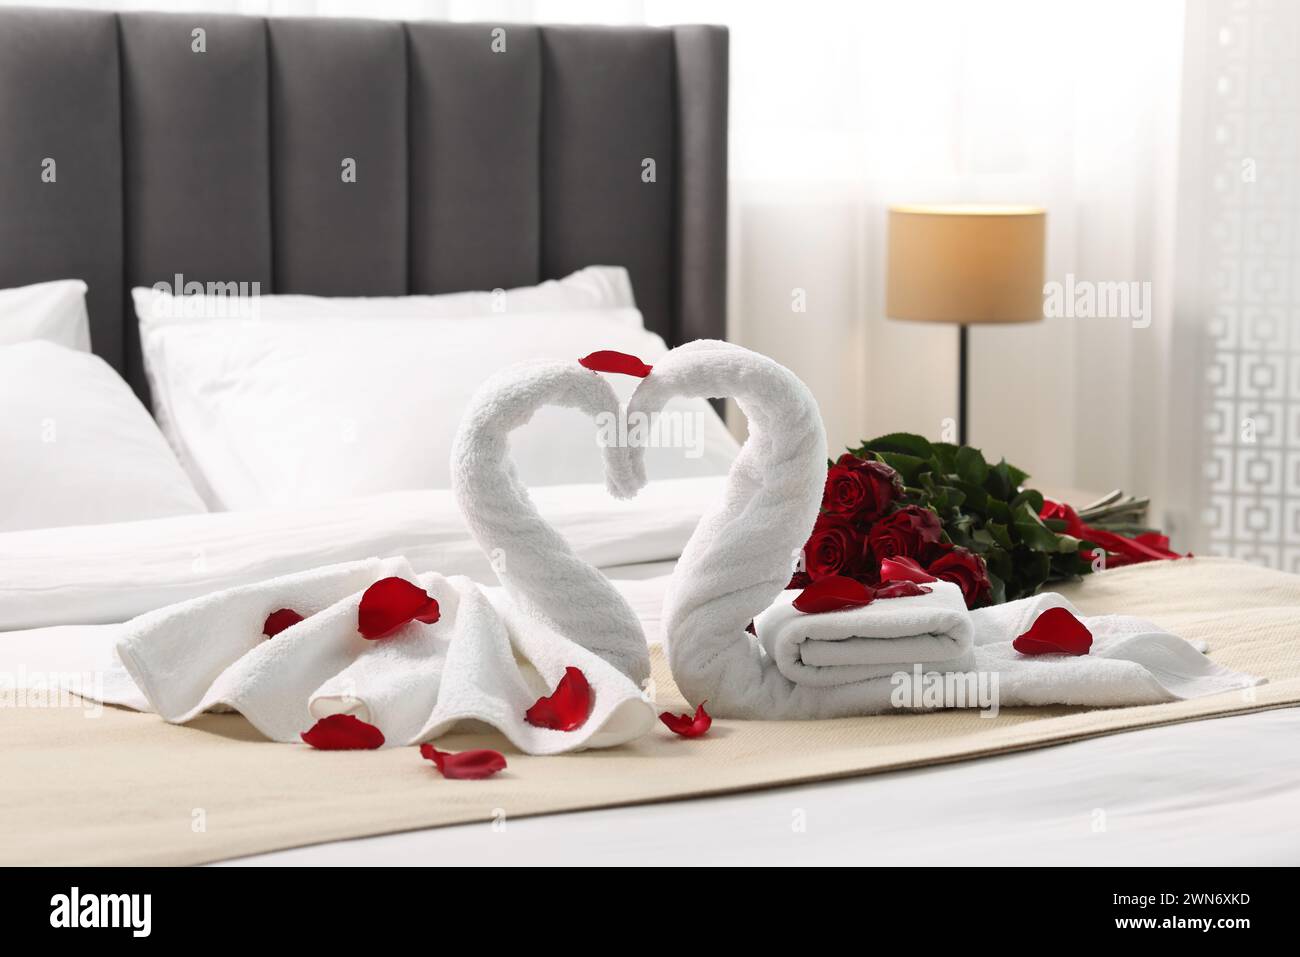 Luna di miele. Cigni fatti di asciugamani e bellissime rose rosse sul letto in camera Foto Stock